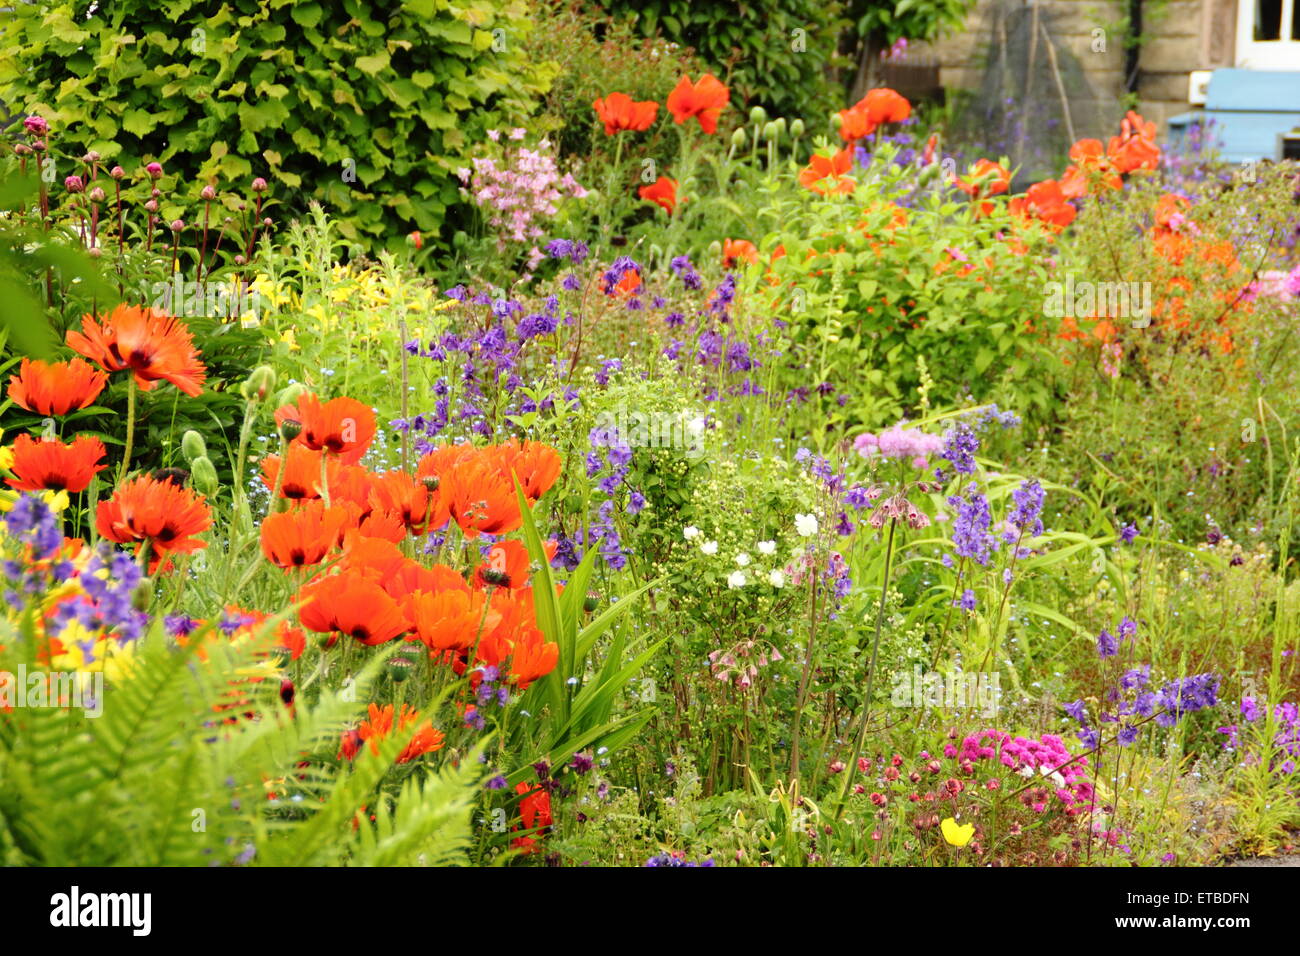 Un Chalet jardin border ponctuées par des coquelicots, aquilegias oriental et de fougères s'épanouit dans le Peak District, Derbyshire, Royaume-Uni Banque D'Images